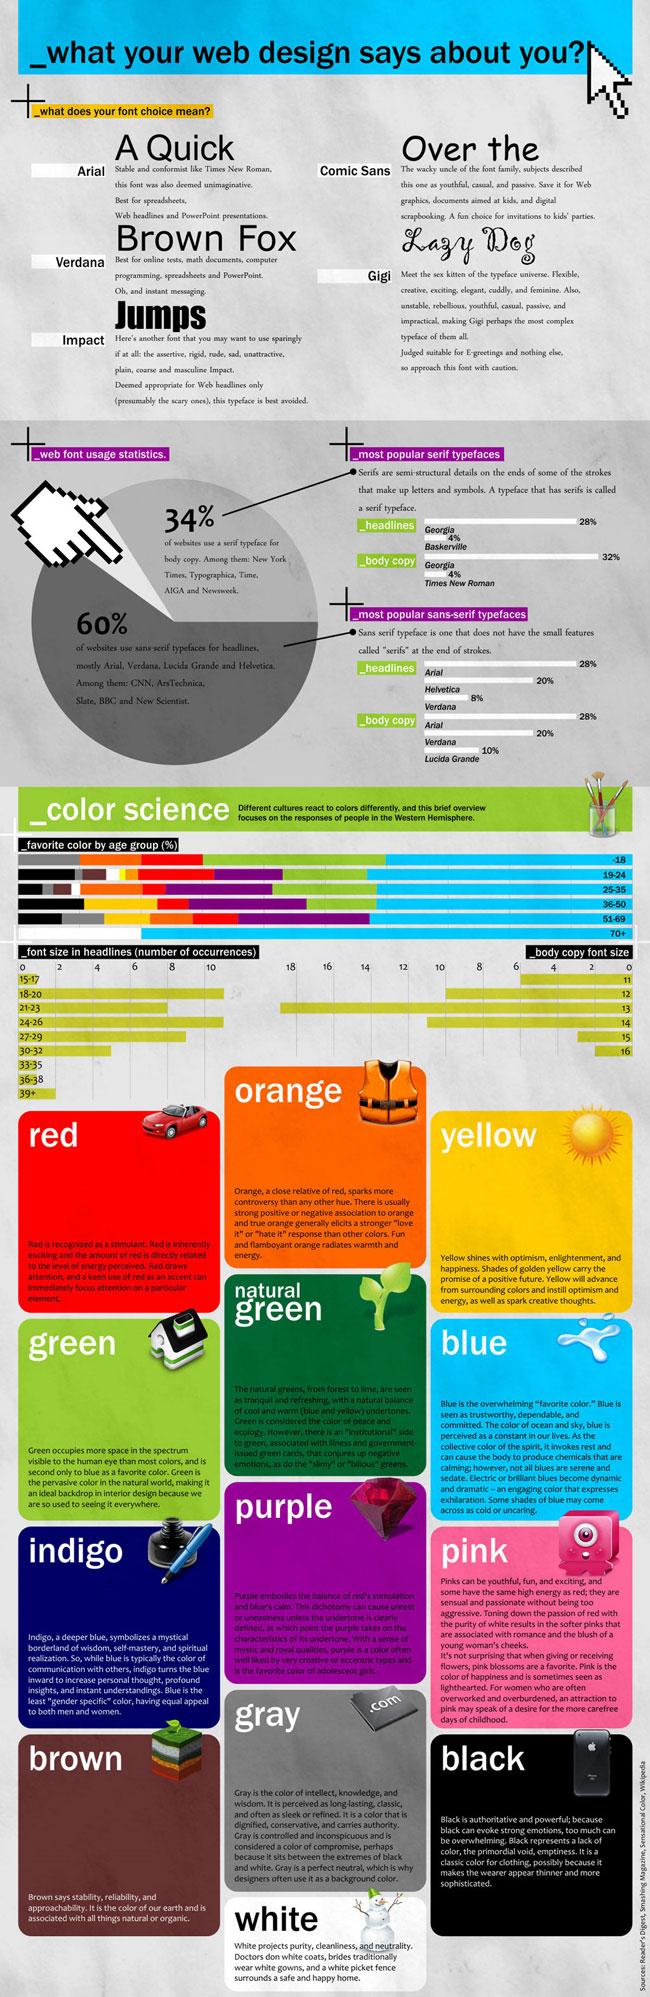 Infographie : Ce que votre design dit de vous